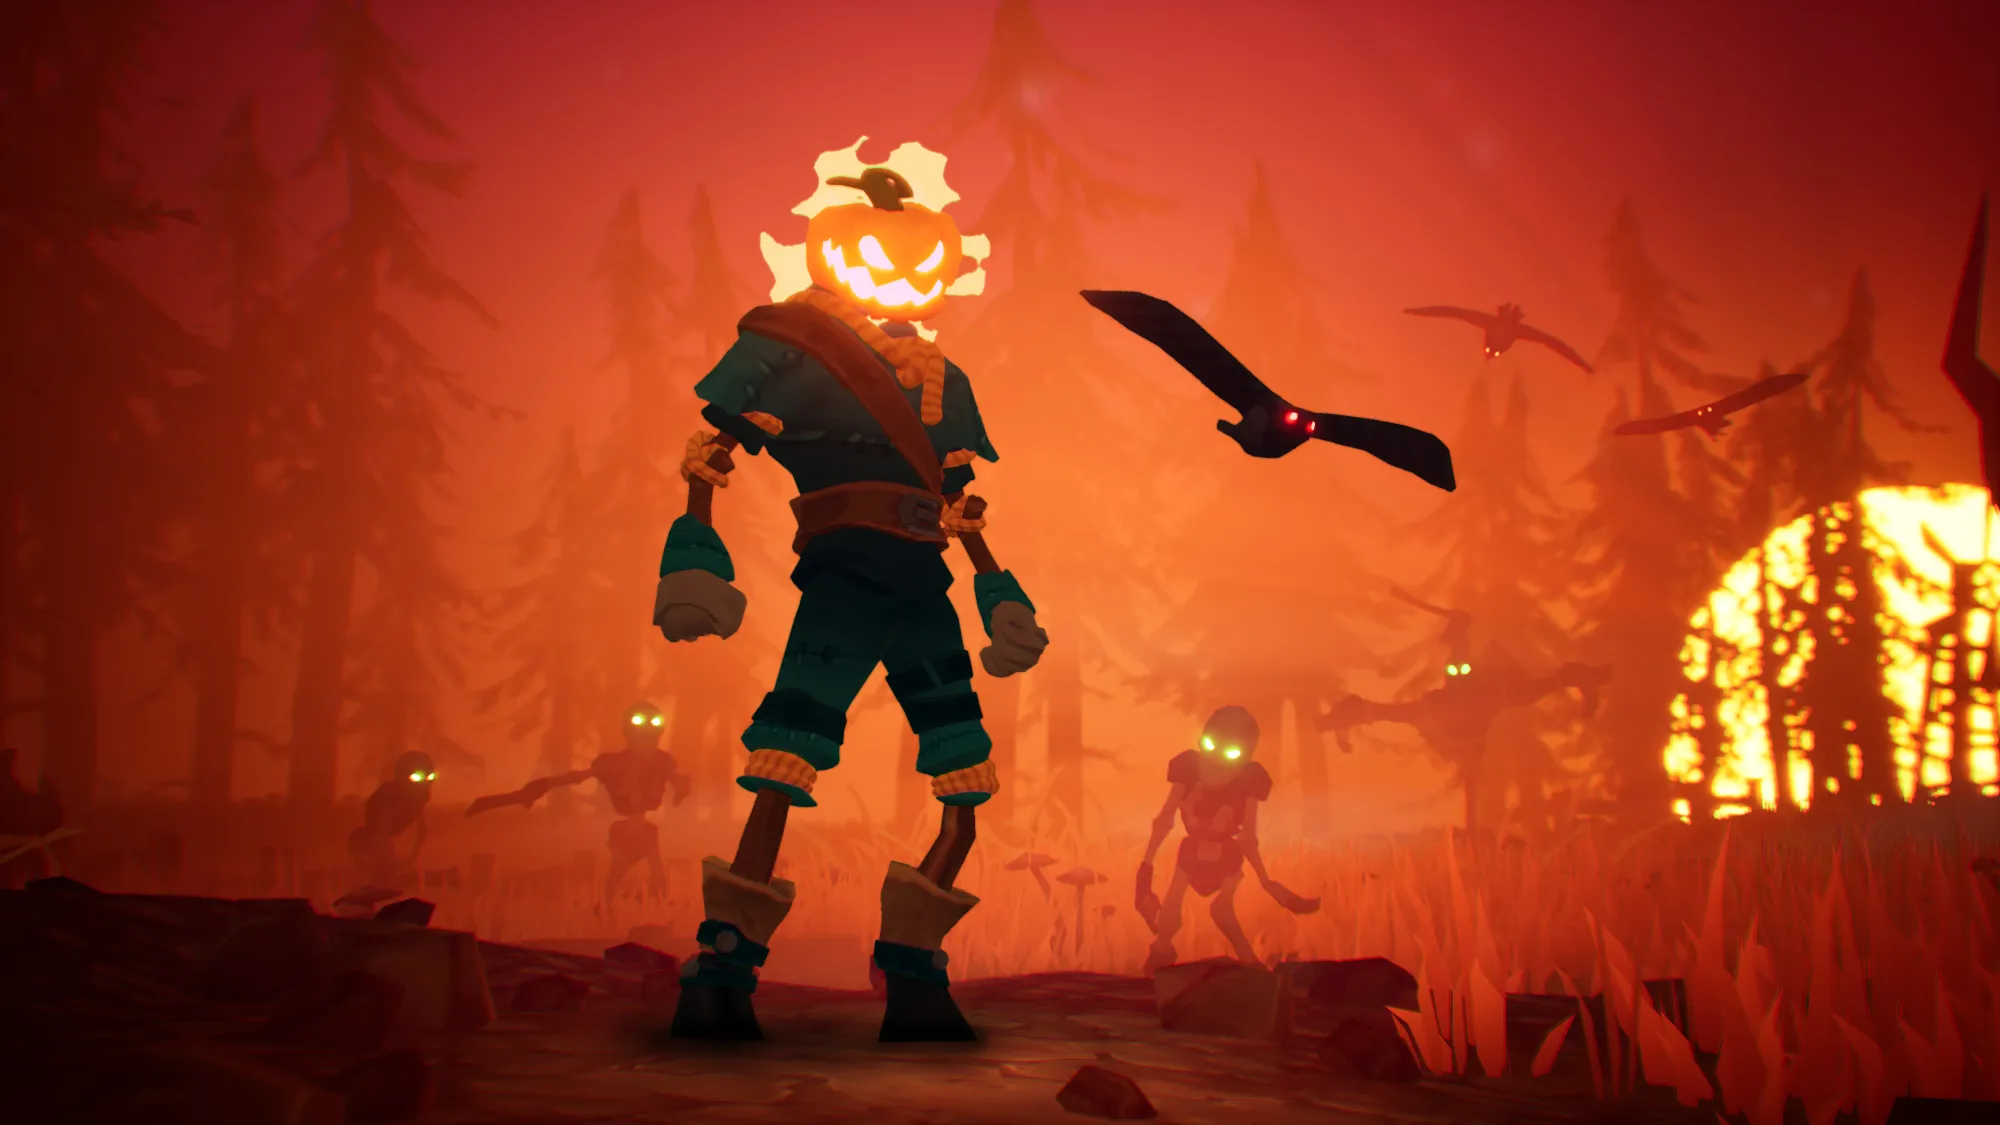 Pumpkin Jack вышла на PS5 и Xbox Series X|S. Рассказываем, почему стоит перевоплотиться в Тыквоголового Джека на Хэллоуин